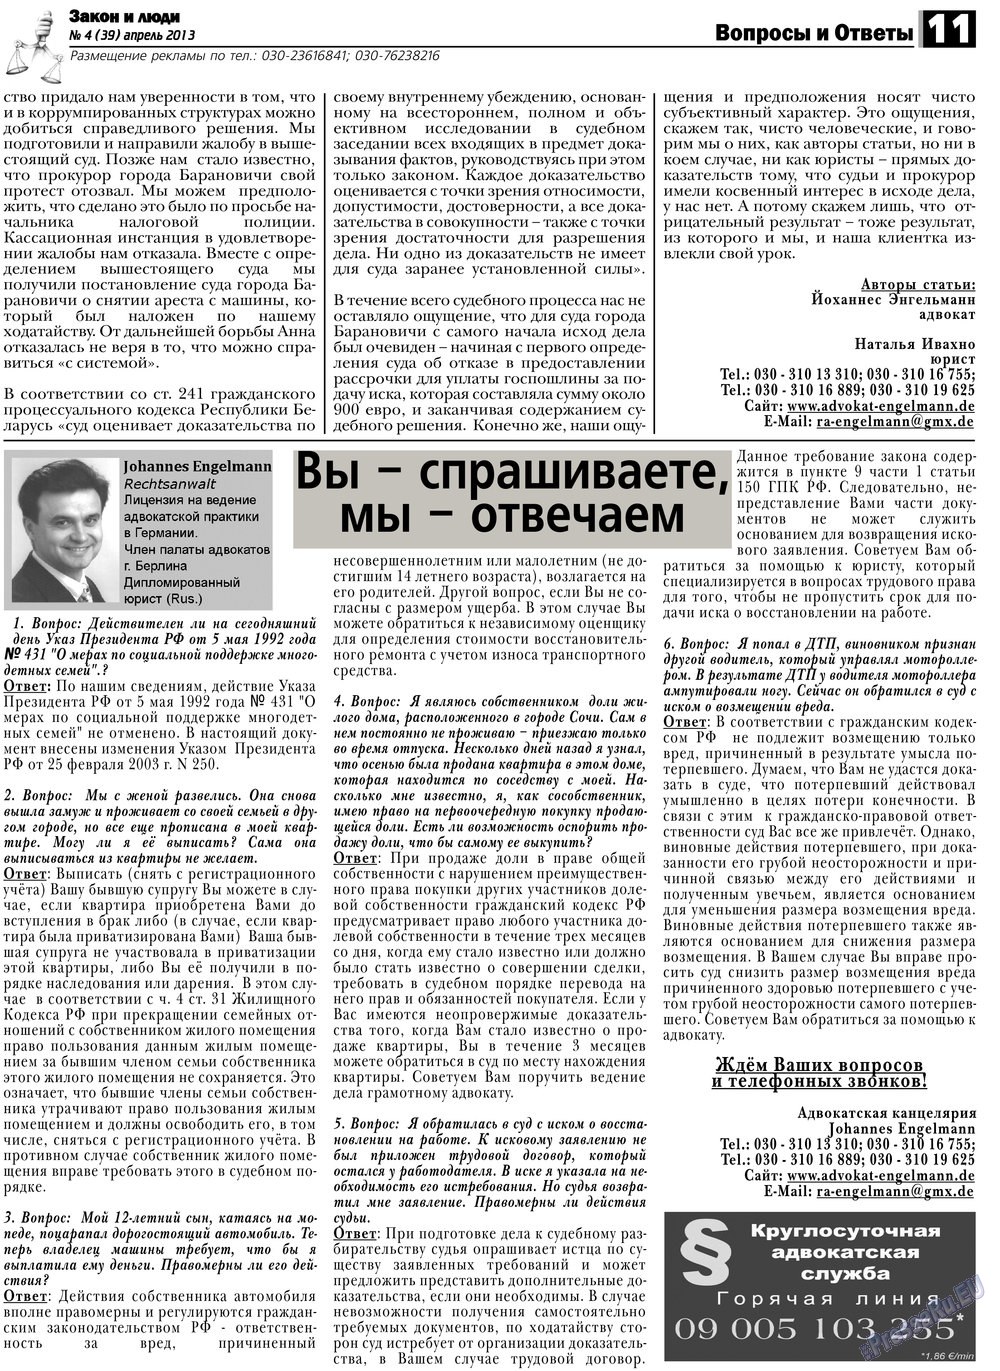 Закон и люди, газета. 2013 №4 стр.11